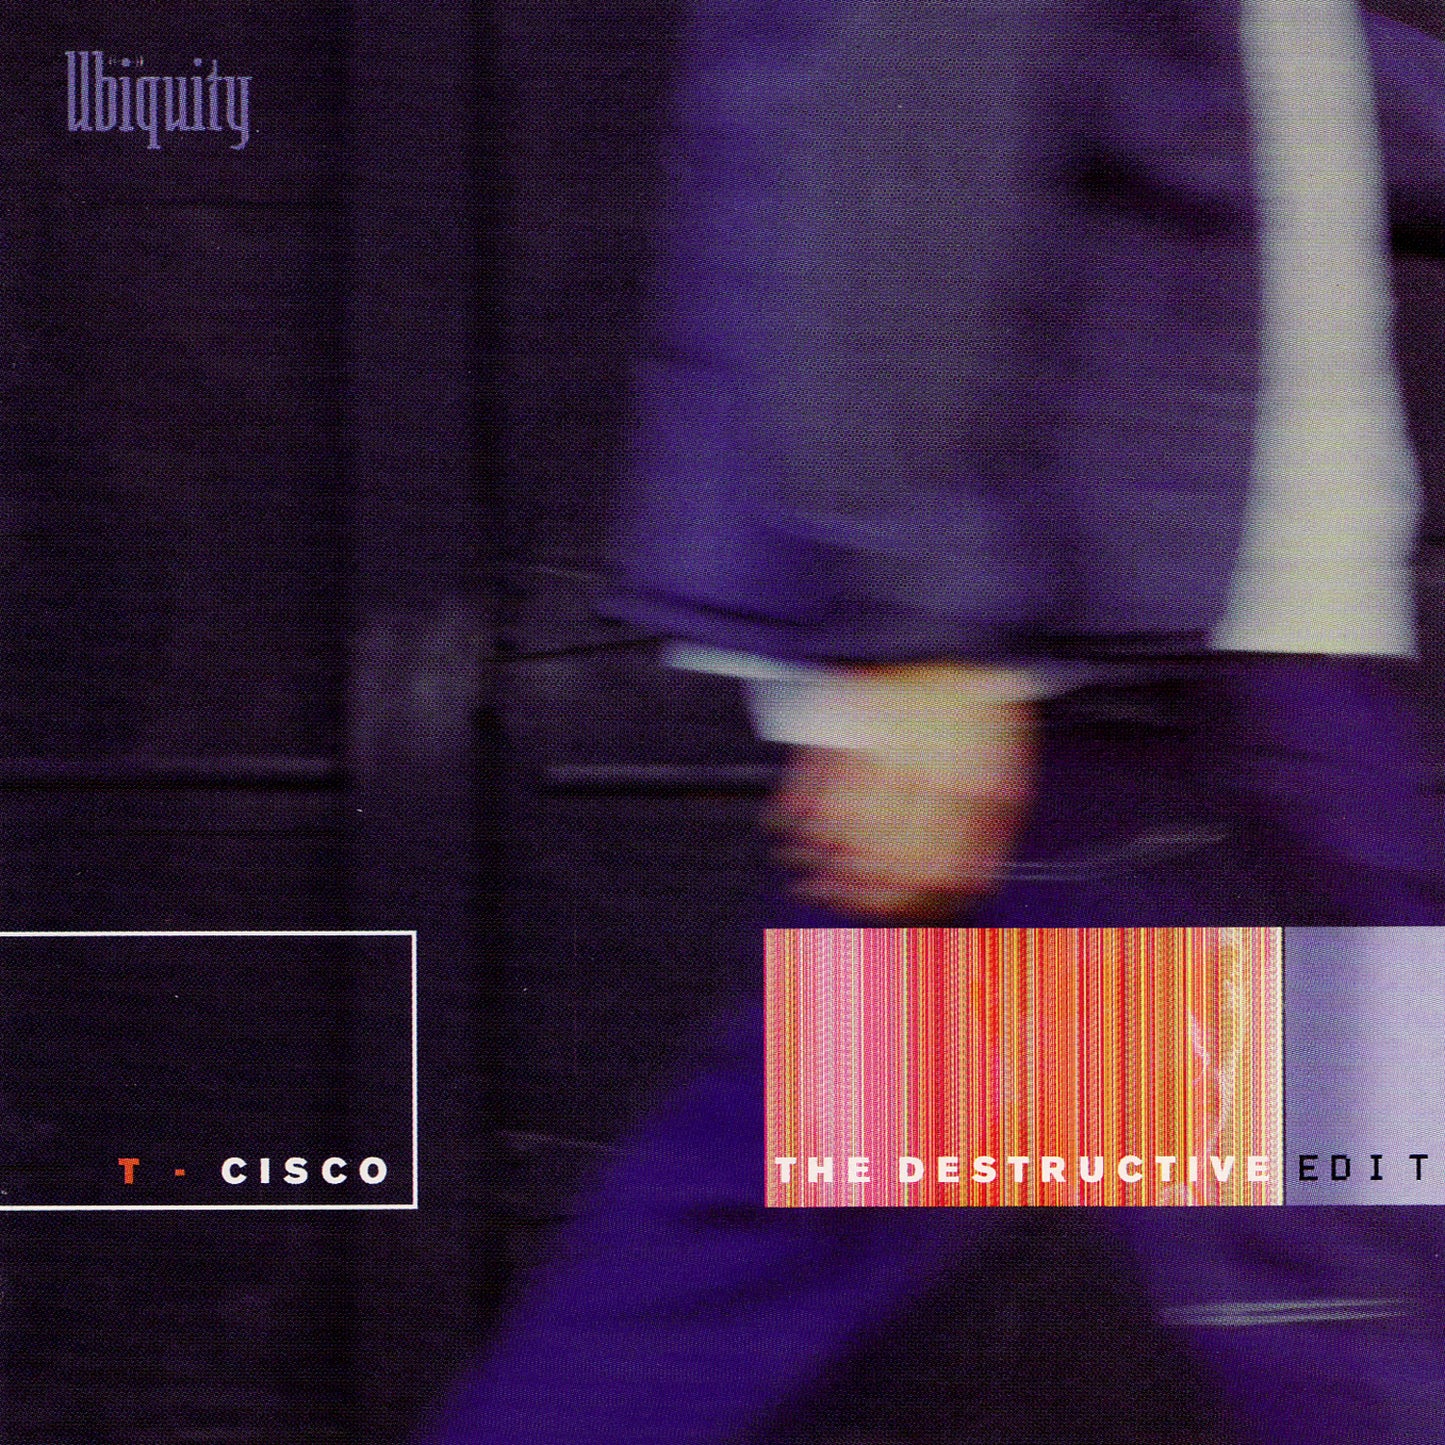 T-Cisco "The Destructive Edit" LP